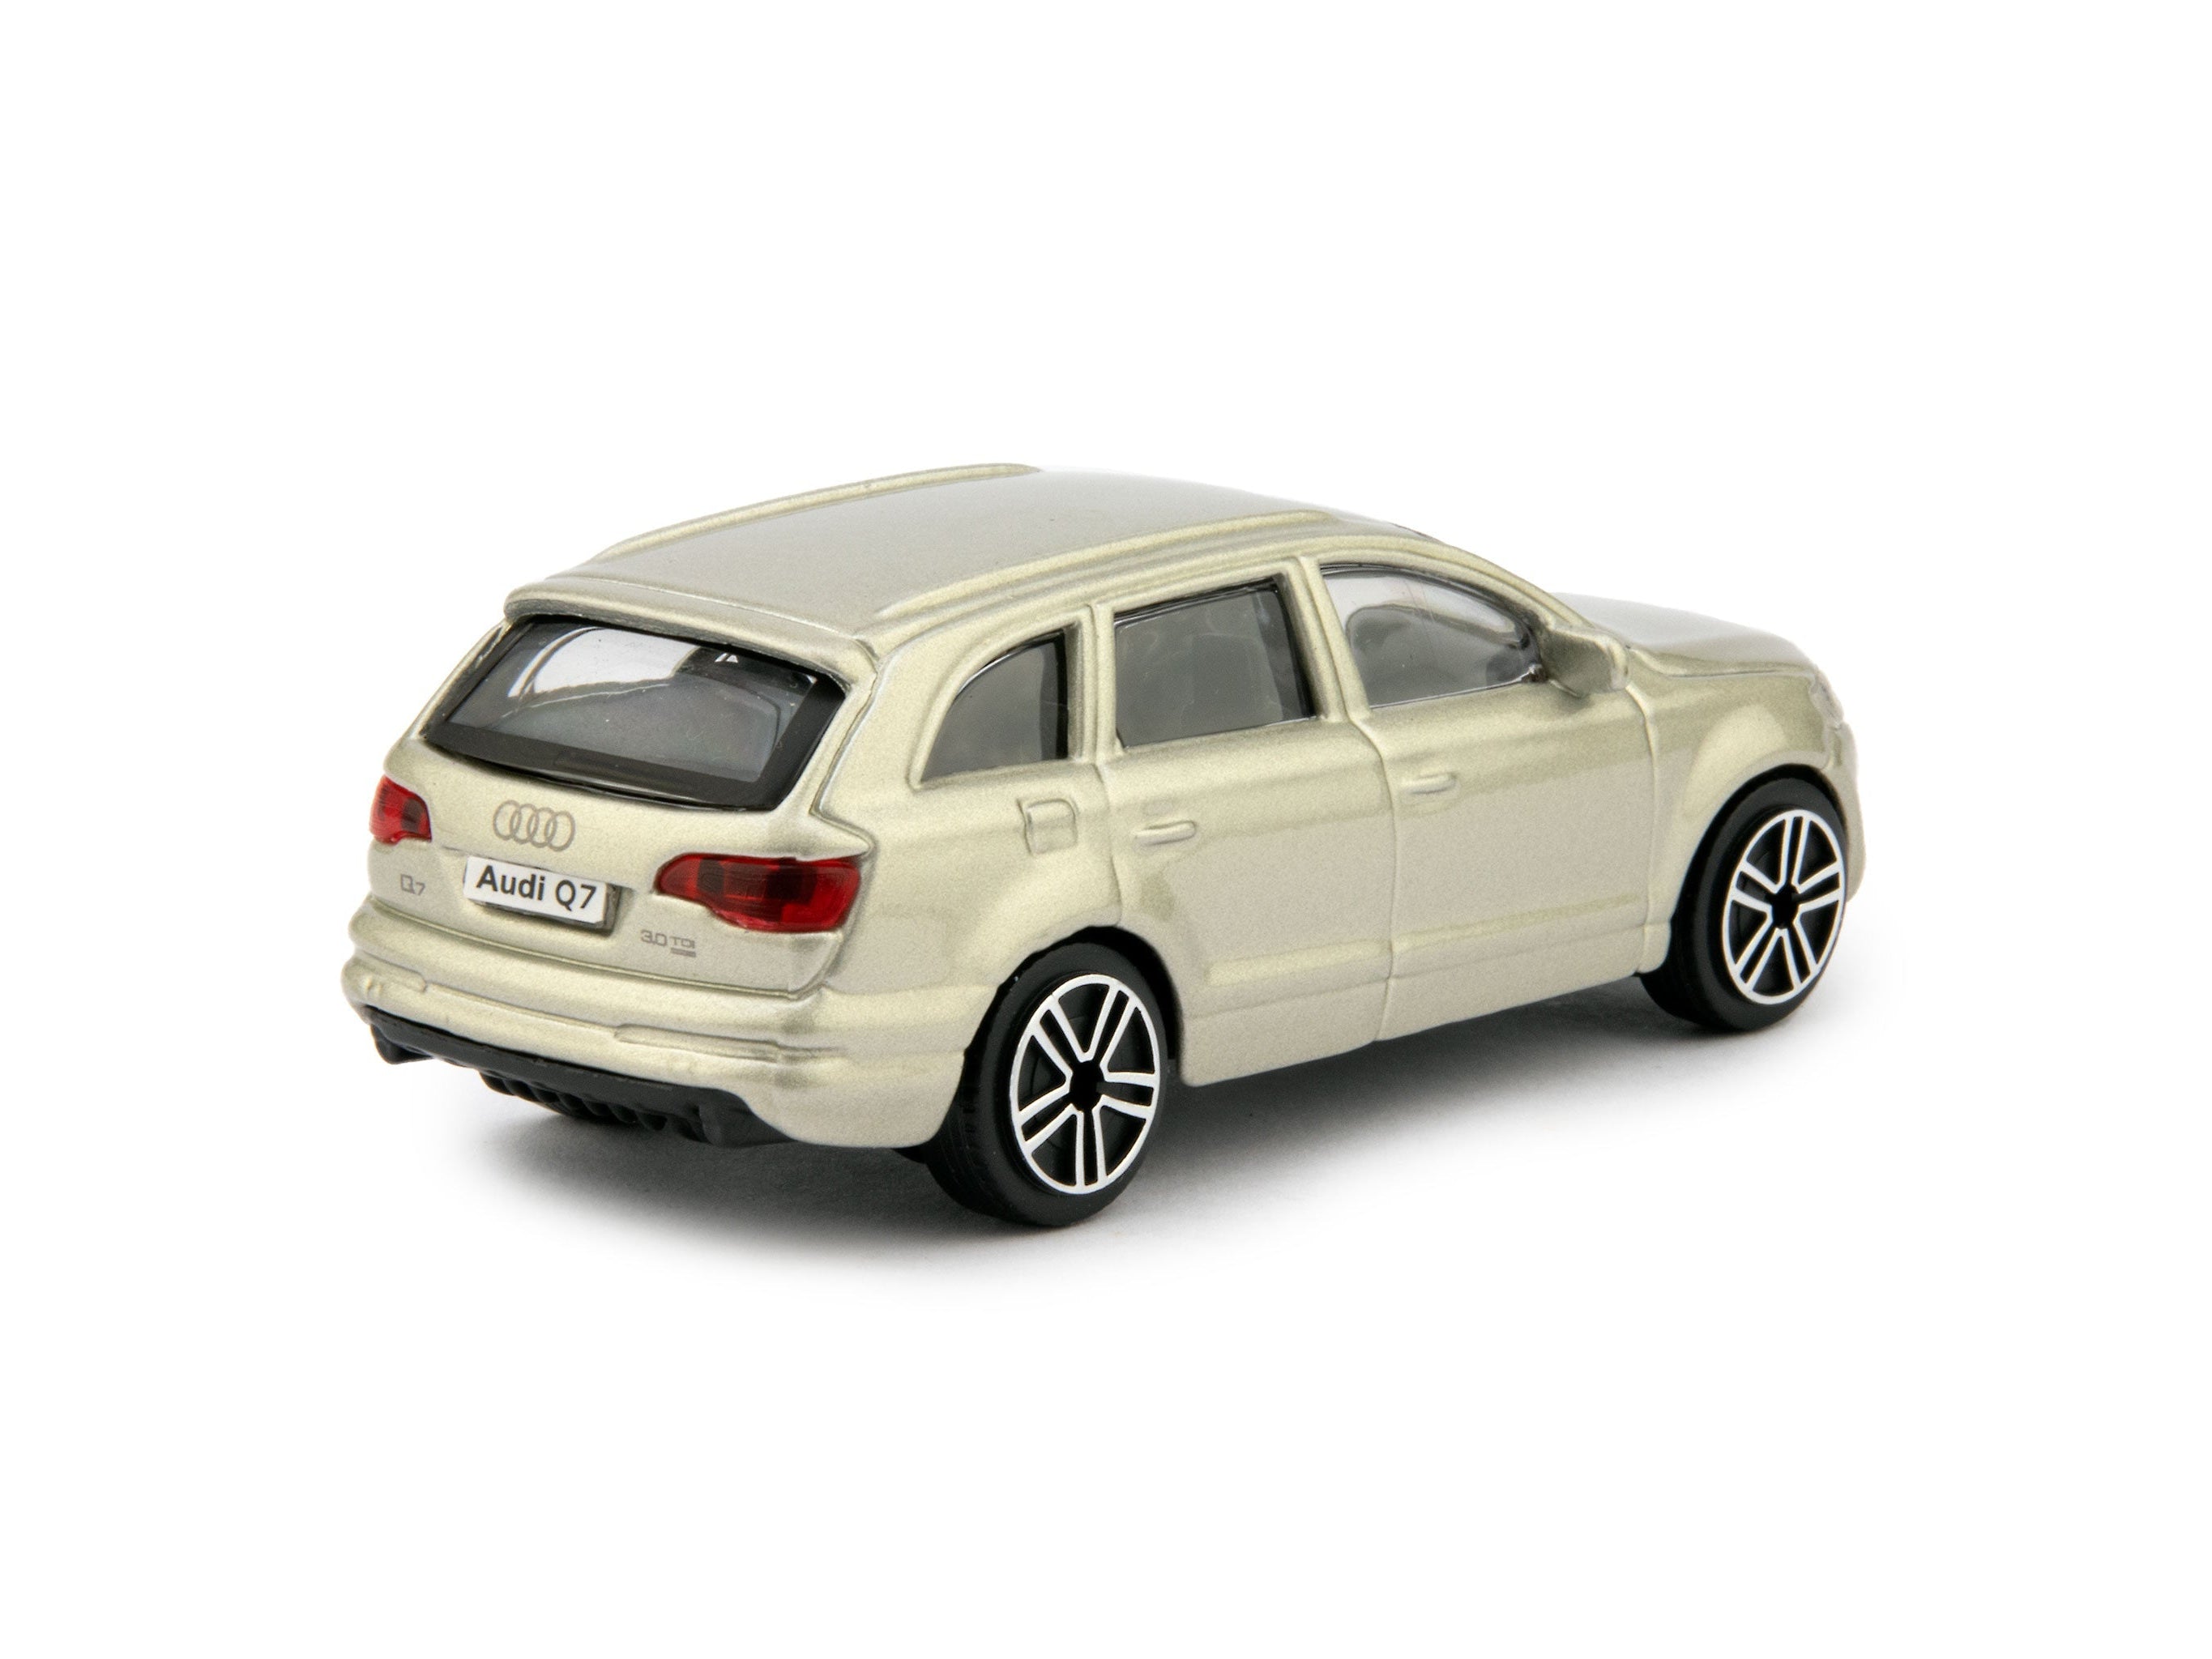 Audi Q7 2011 gold - 1:43 Scale Diecast Toy Car-Bburago-Diecast Model Centre